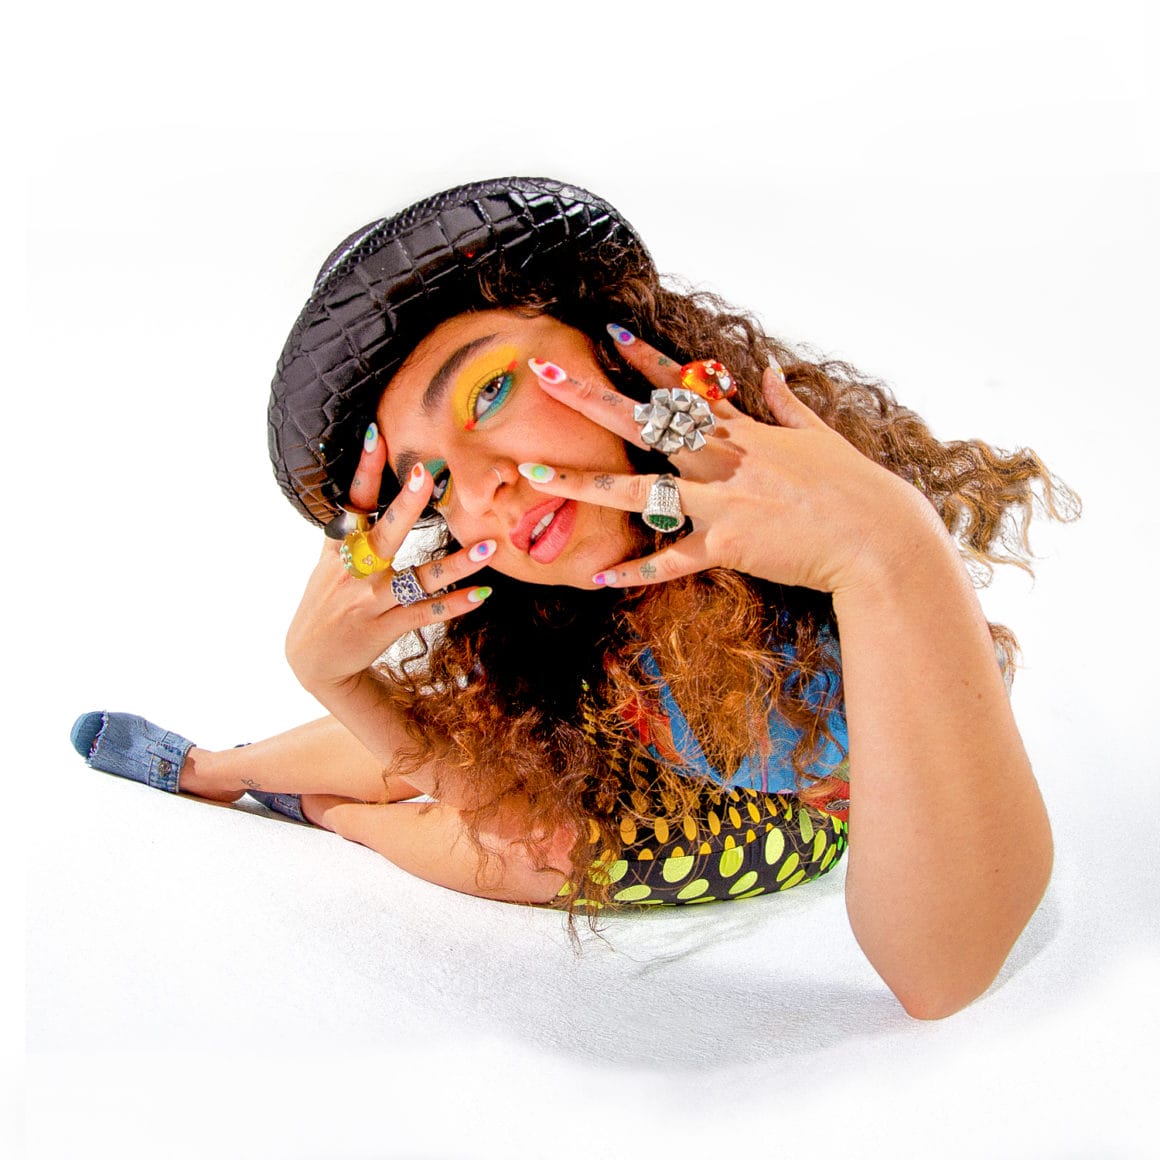 photographie de la chanteuse pop en effet fisheye, elle porte un chapeau ciré, de grosses bagues, un maquillage coloré et des ongles vernis